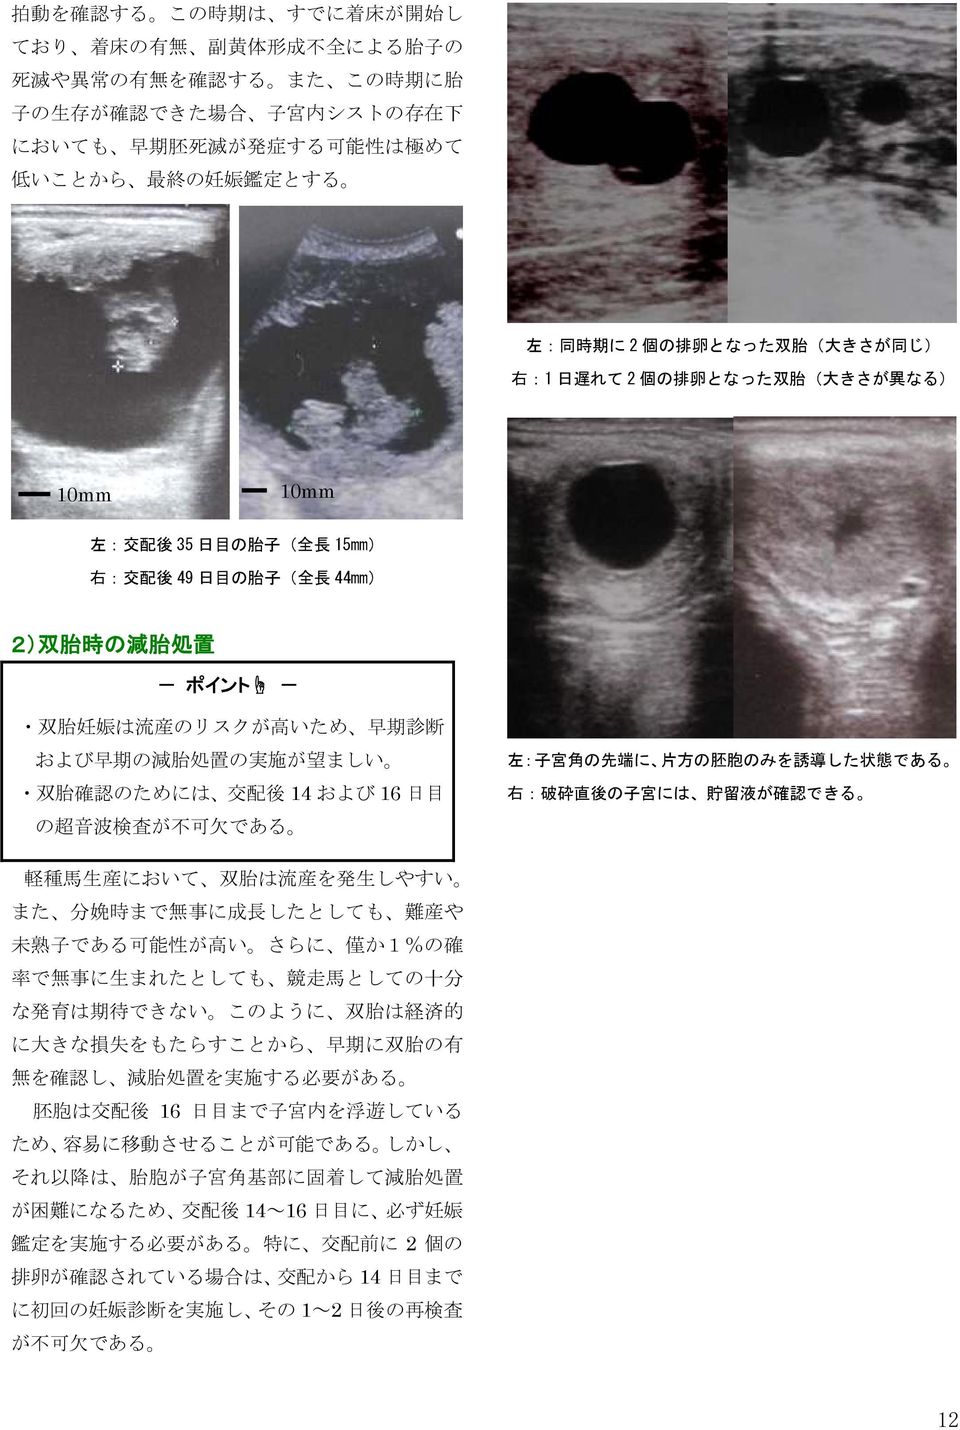 胎 処 置 双 胎 妊 娠 は 流 産 のリスクが 高 いため 早 期 診 断 および 早 期 の 減 胎 処 置 の 実 施 が 望 ましい 双 胎 確 認 のためには 交 配 後 14 および 16 日 目 の 超 音 波 検 査 が 不 可 欠 である 左 : 子 宮 角 の 先 端 に 片 方 の 胚 胞 のみを 誘 導 した 状 態 である 右 : 破 砕 直 後 の 子 宮 には 貯